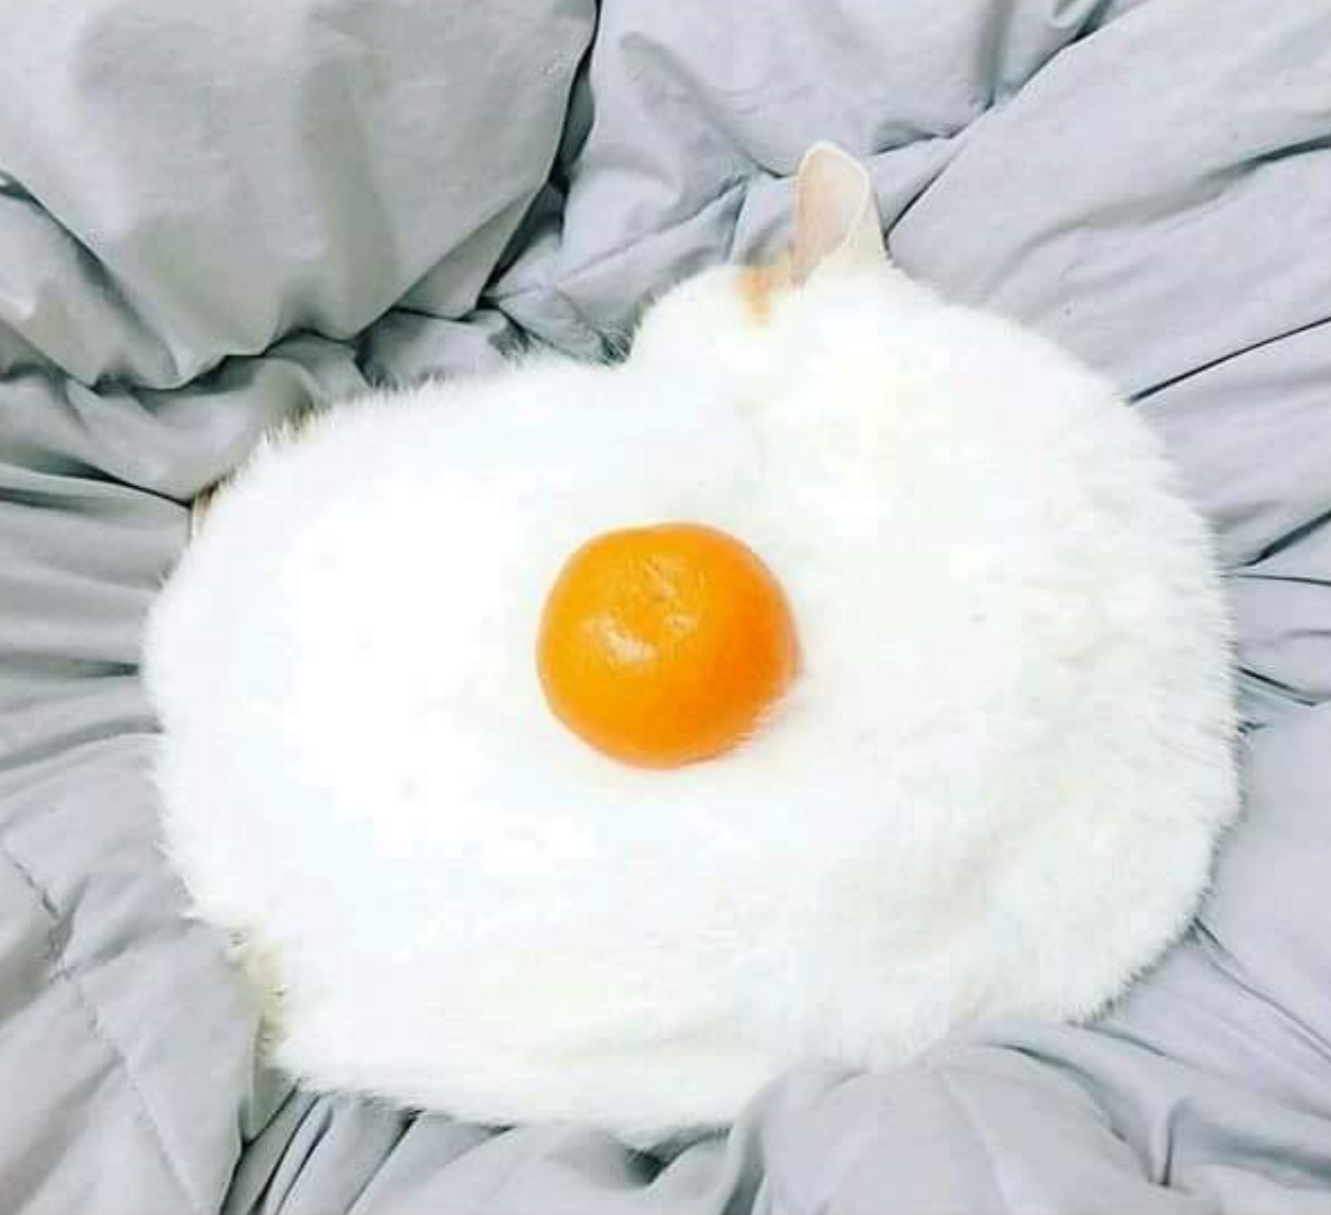 Egg?